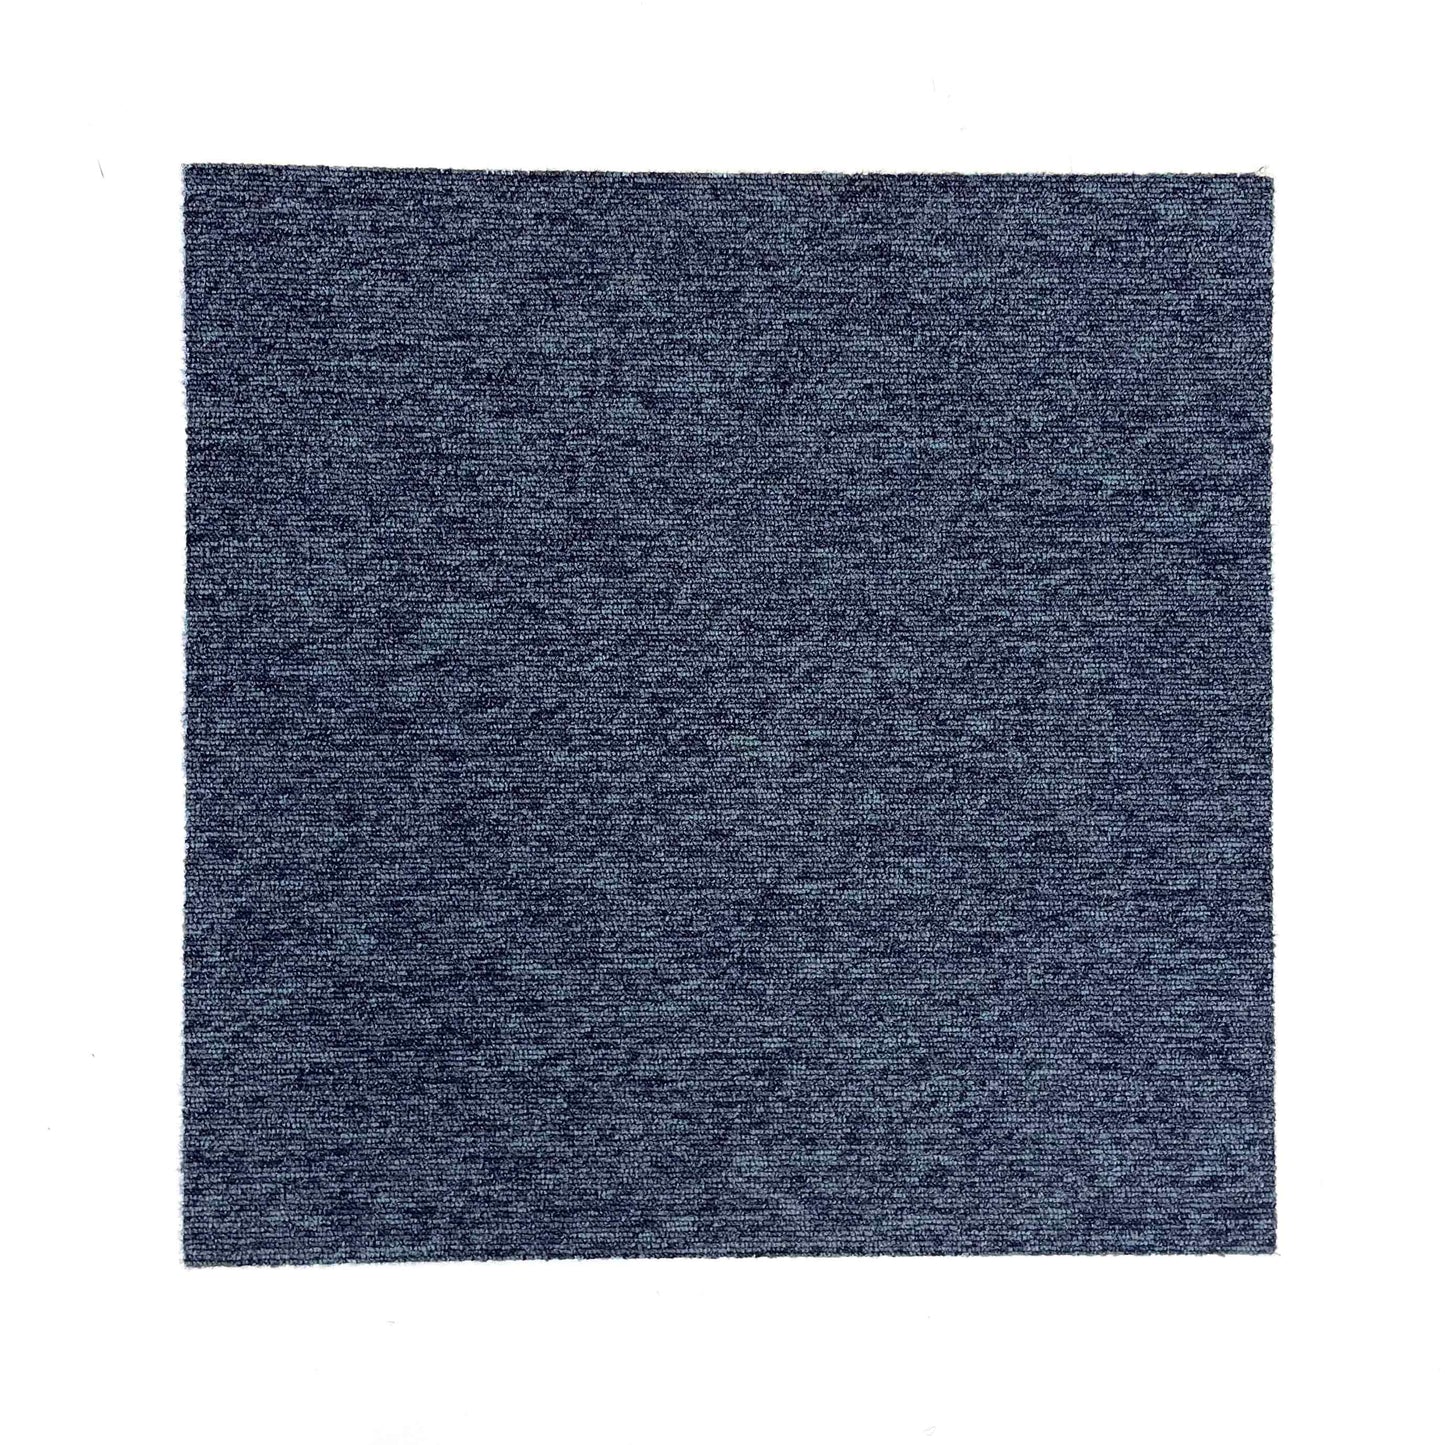 Mottled Blue Carpet Tiles